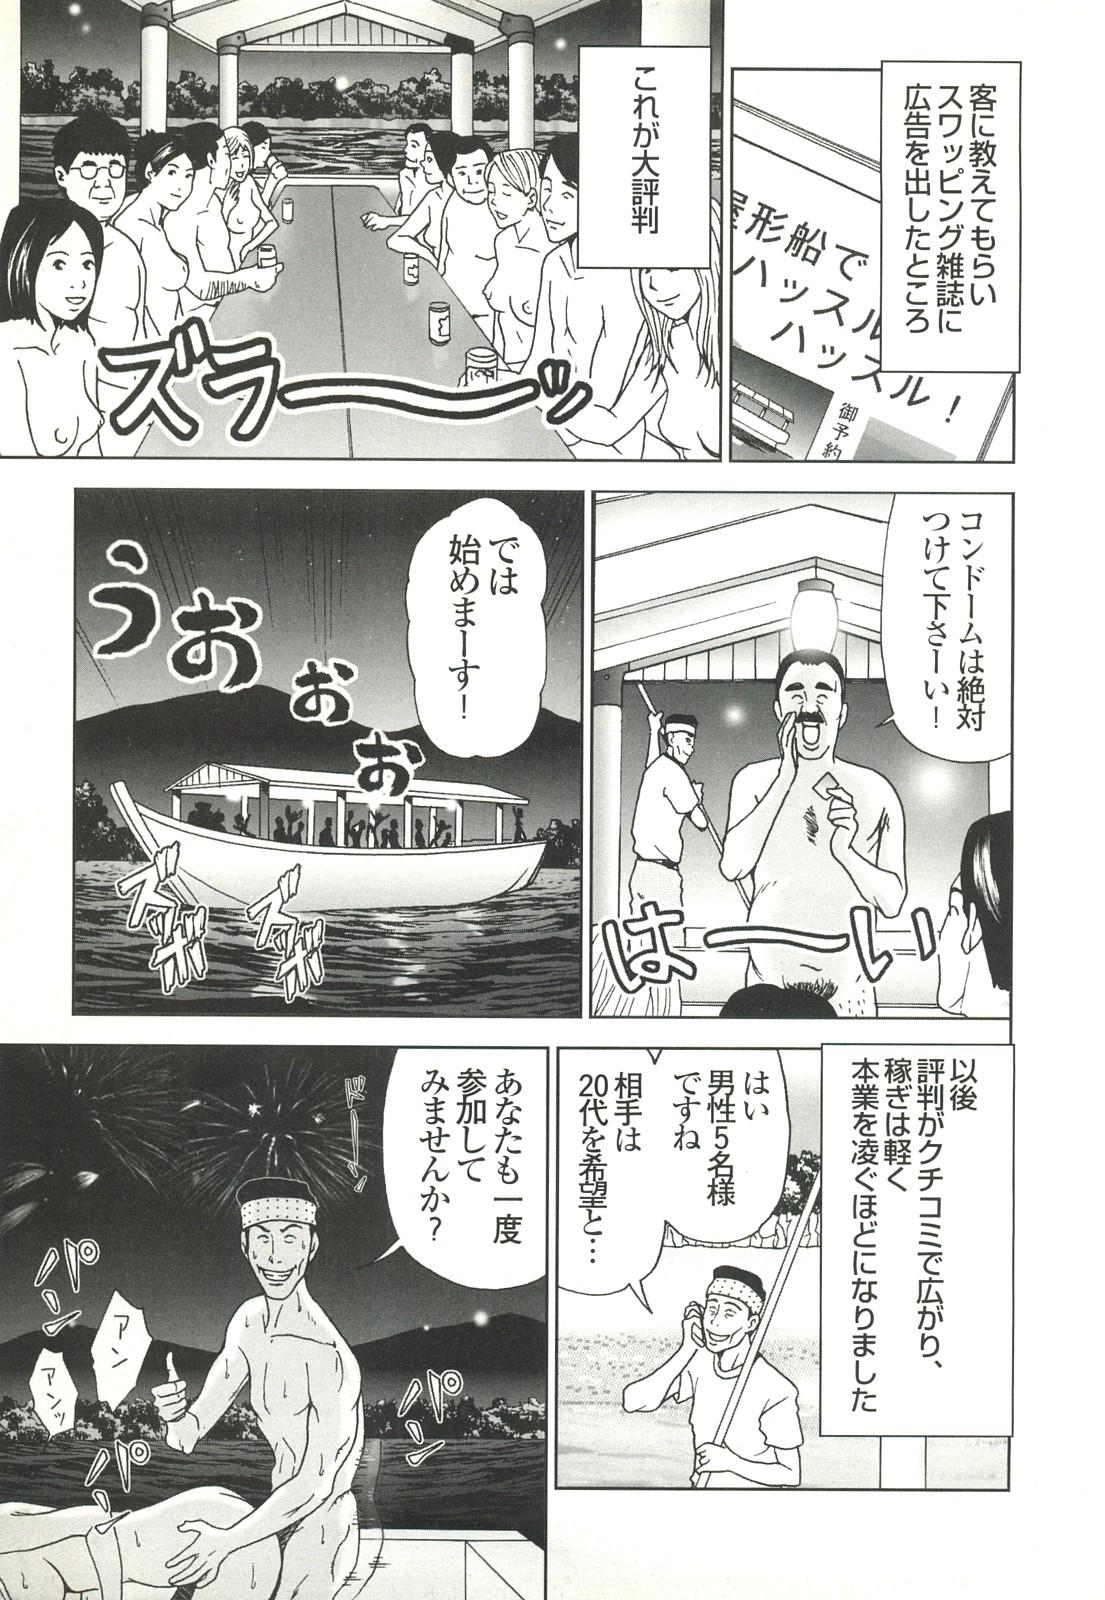 コミック裏モノJAPAN Vol.18 今井のりたつスペシャル号 288